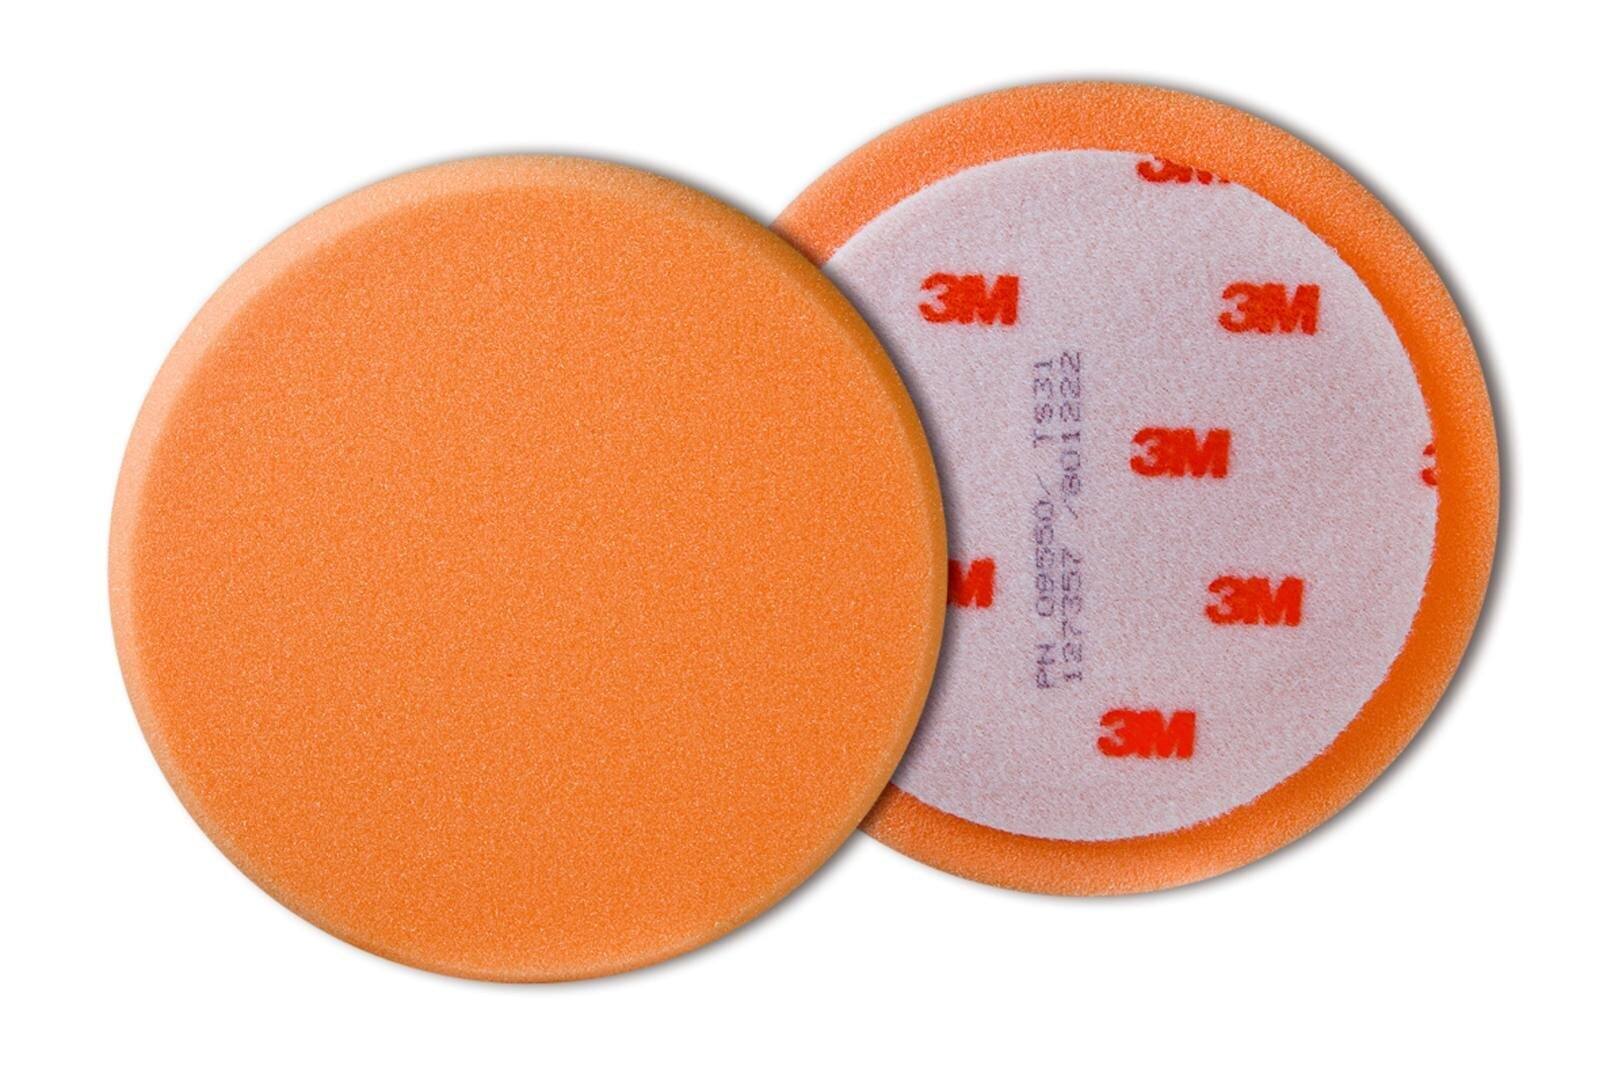 3M Perfect-it III mousse de polissage, lisse, orange, 150 mm #09550